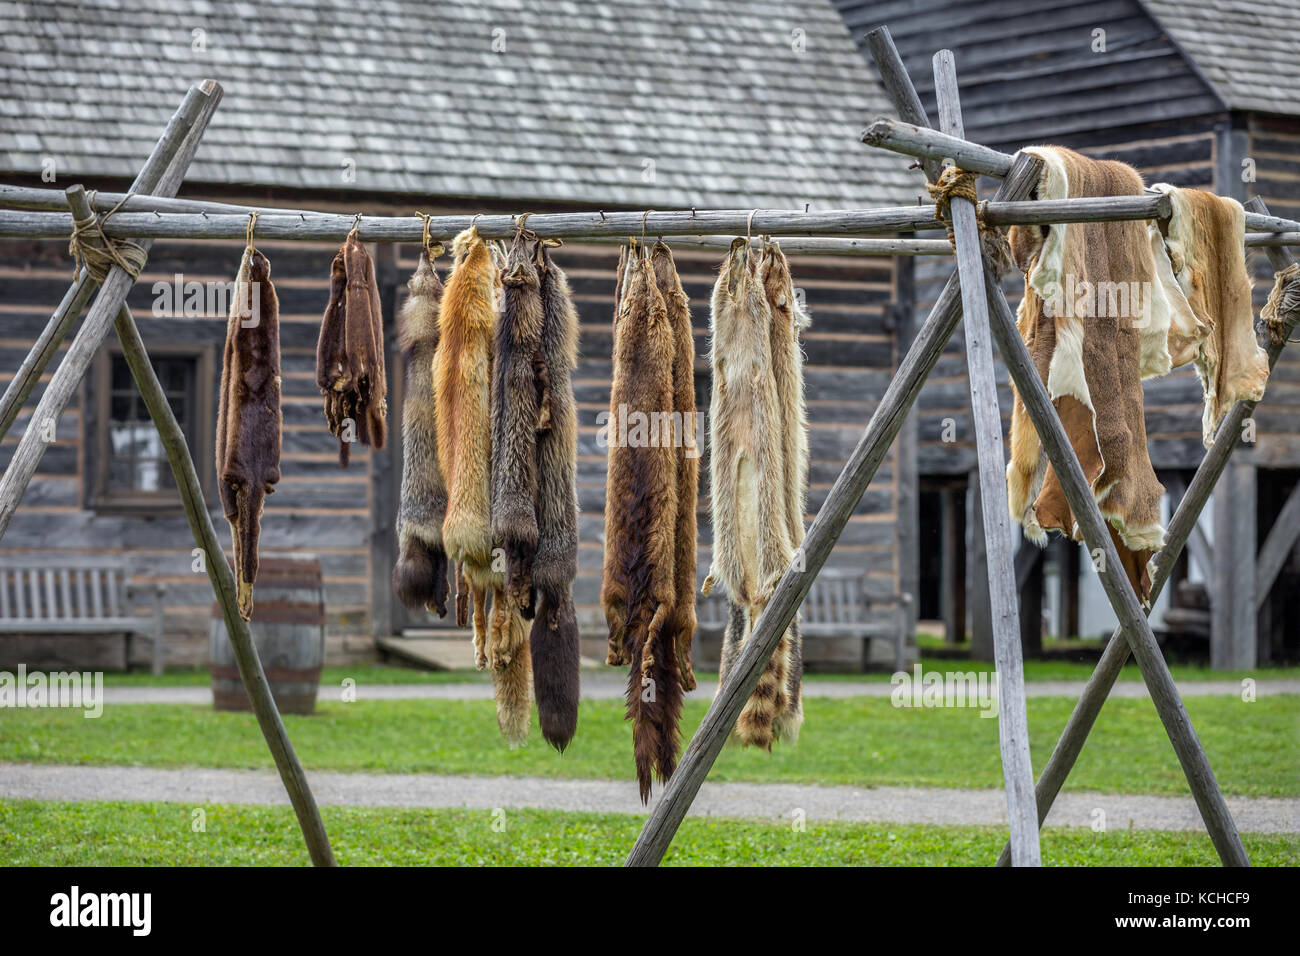 Peaux de fourrure, de l'époque du commerce des fourrures, le parc historique du Fort William, Thunder Bay, Ontario, Canada. Banque D'Images